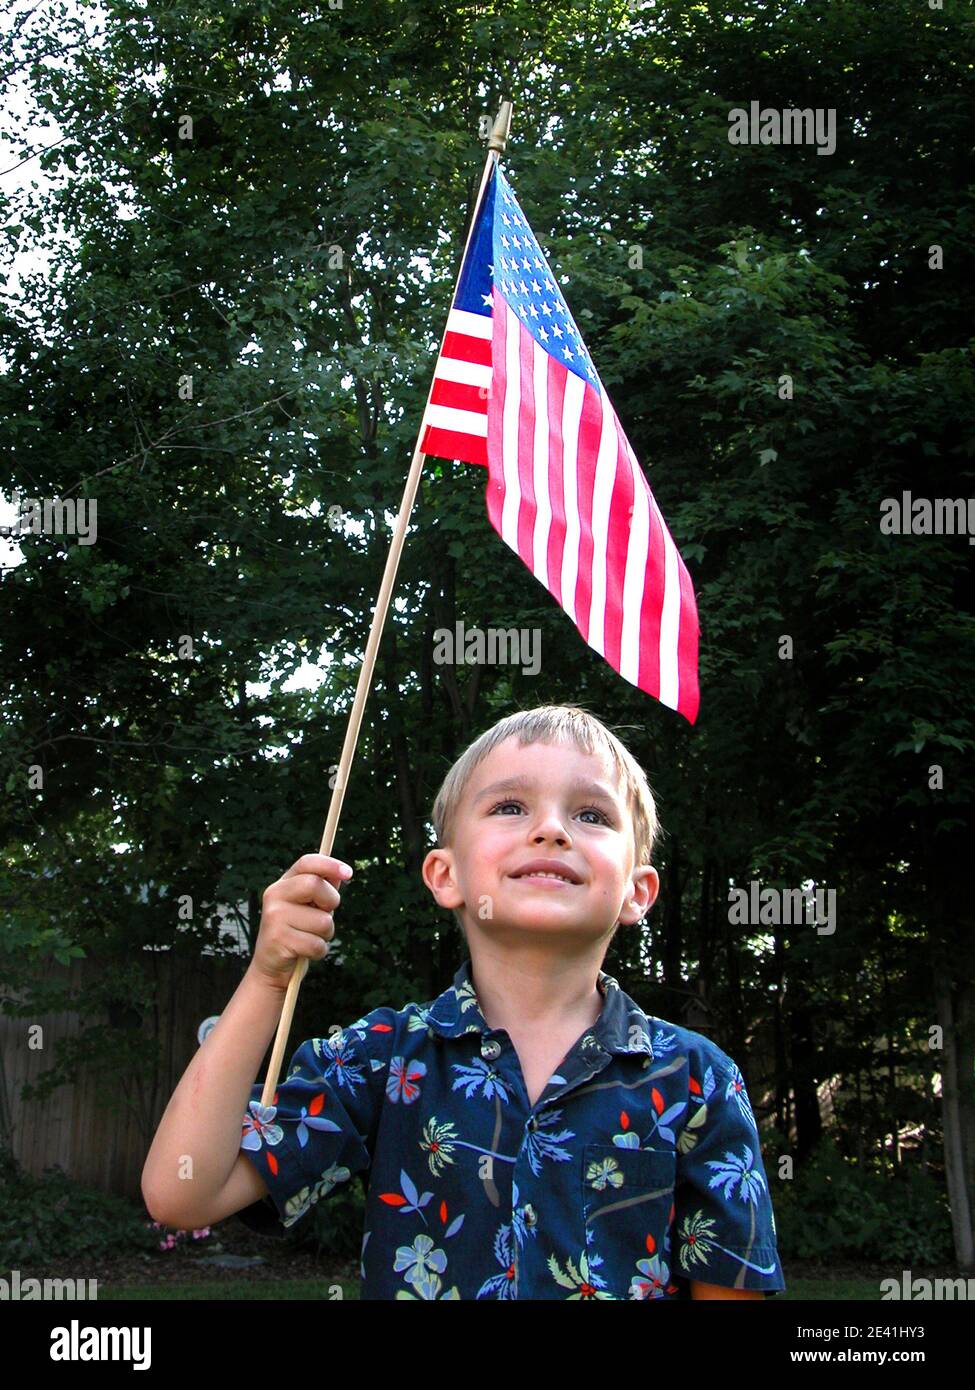 Un petit garçon porte un drapeau américain sur sa tête une posture patriotique Banque D'Images